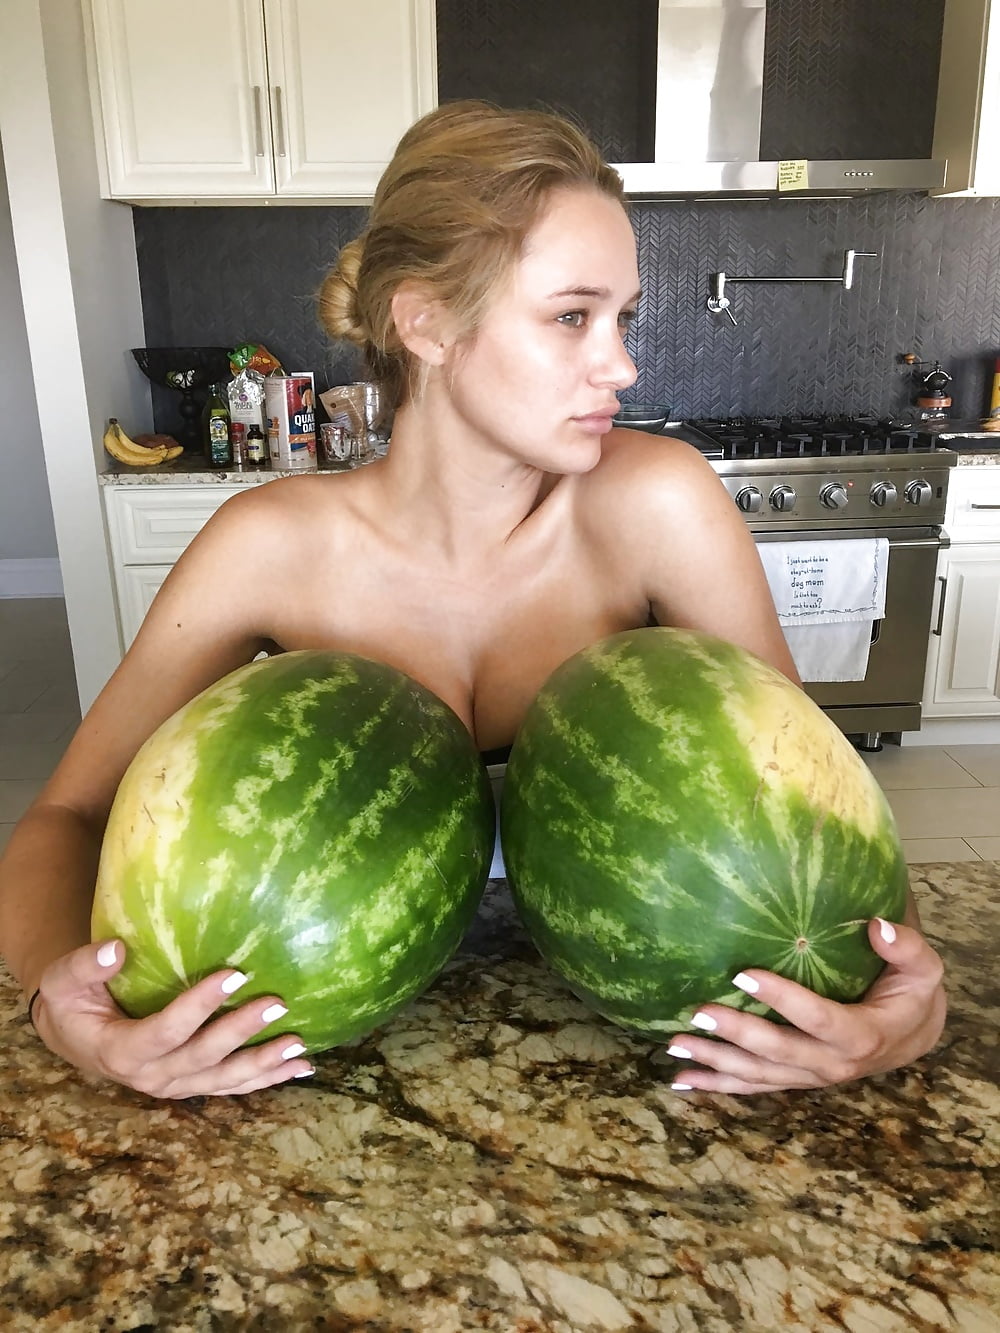 Hunter Haley King showing off her huge melons 8-18-17 (1/1)